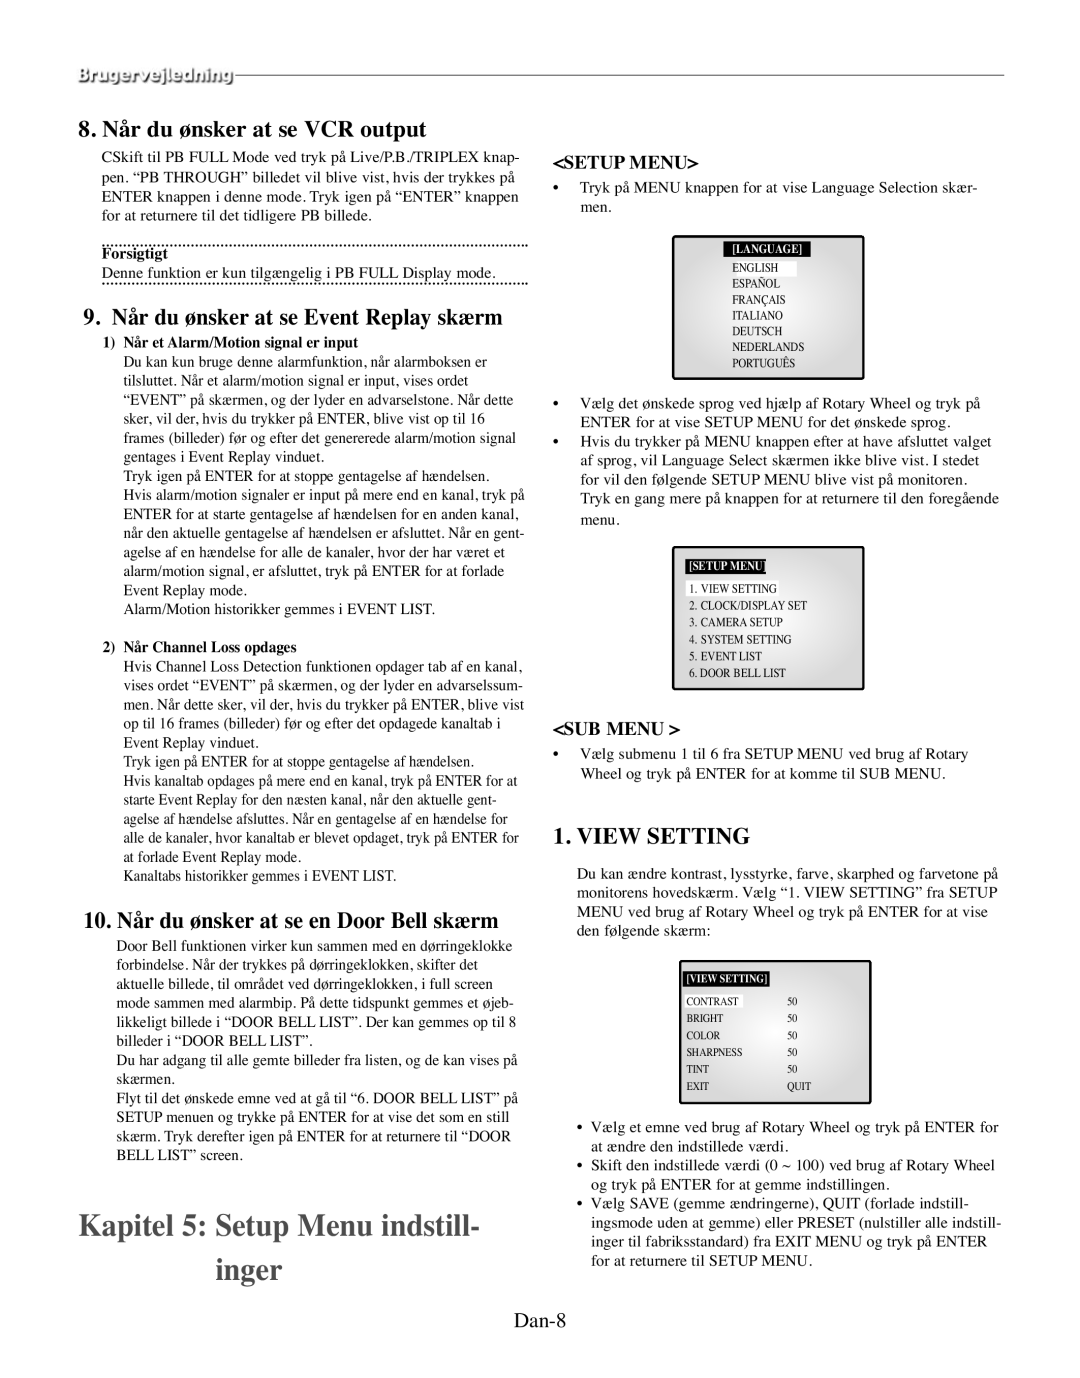 Samsung SMO-210TRP Kapitel 5 Setup Menu indstill- inger, 8. Når du ønsker at se VCR output, View Setting, Dan-8, Sub Menu 